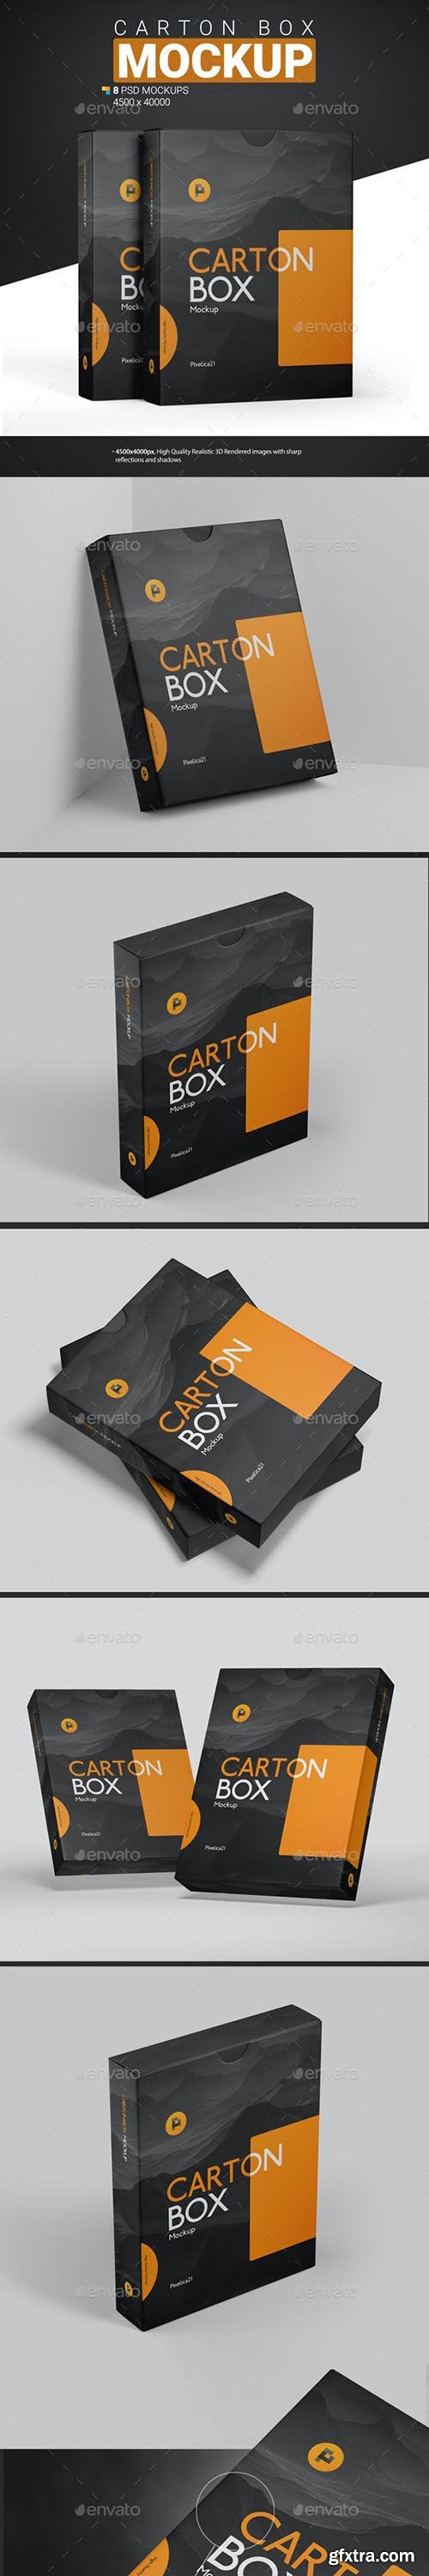 GraphicRiver - Carton Box Mockup 31176771